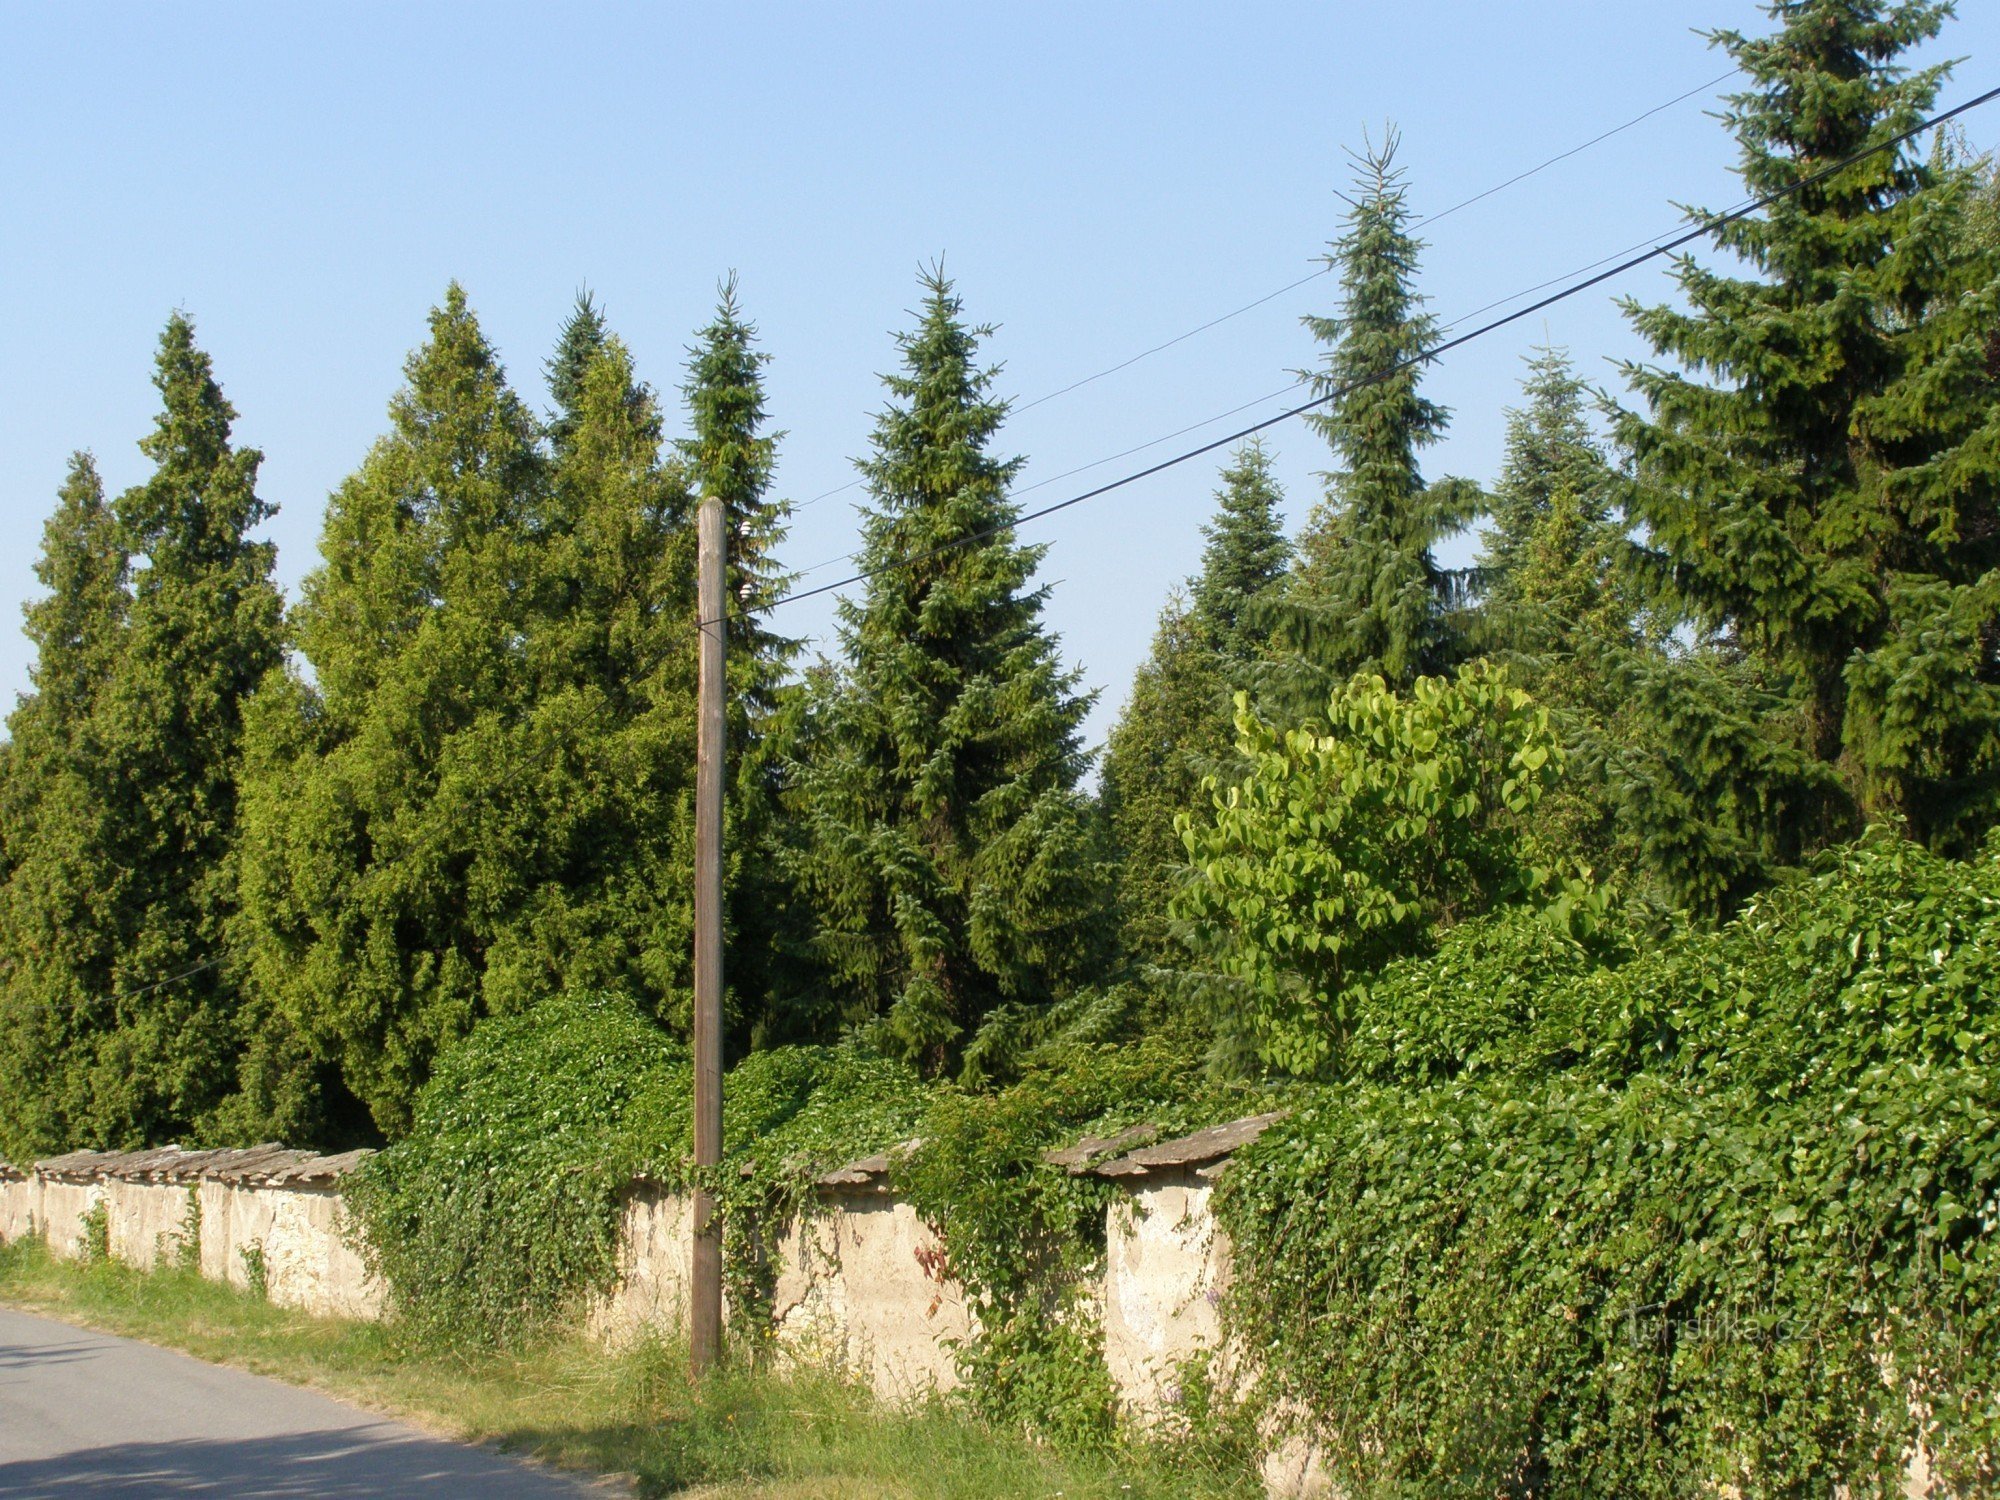 Dobruška - nghĩa trang Do Thái